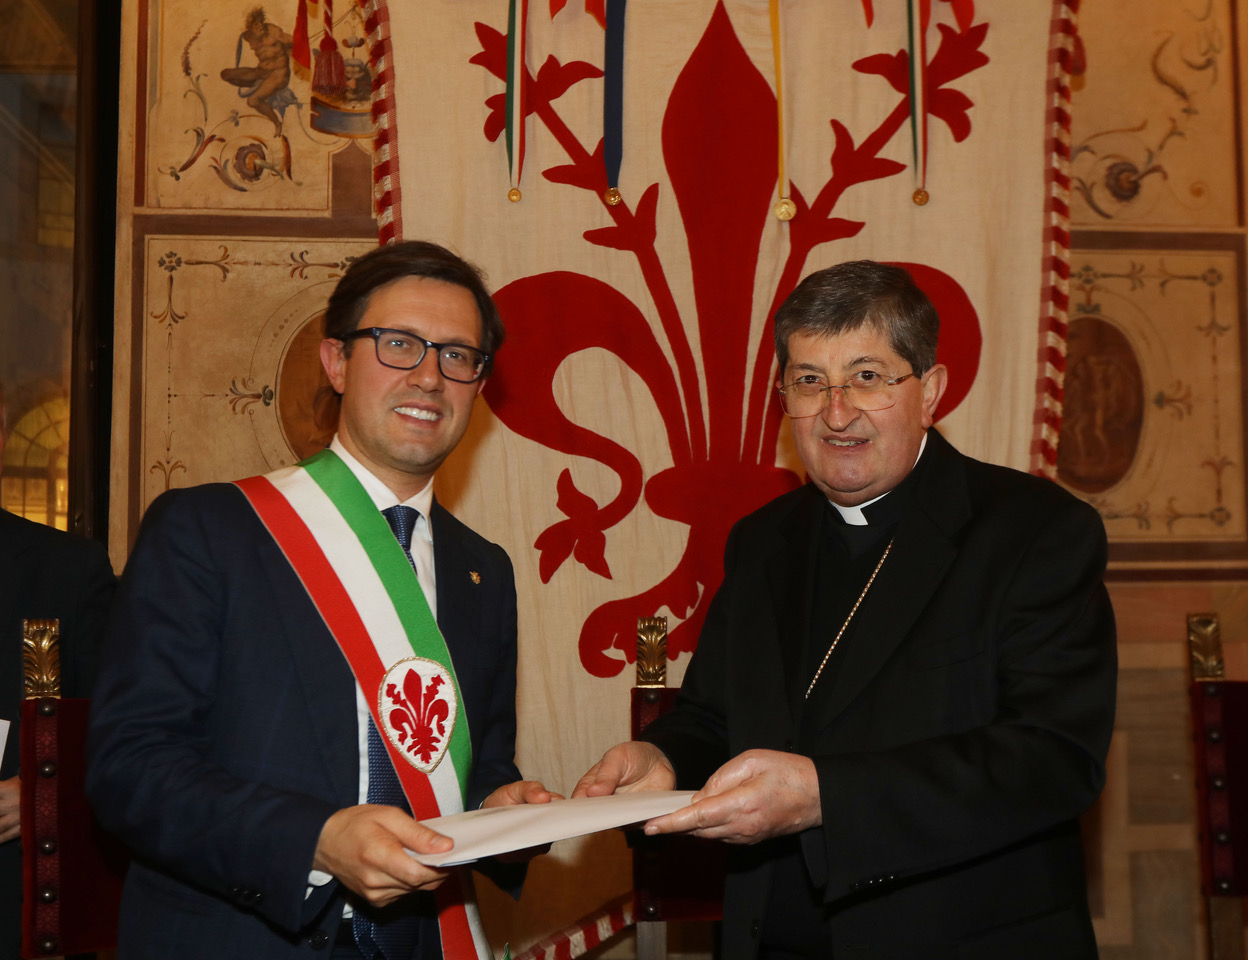 Il cardinale Betori con il sindaco Nardella